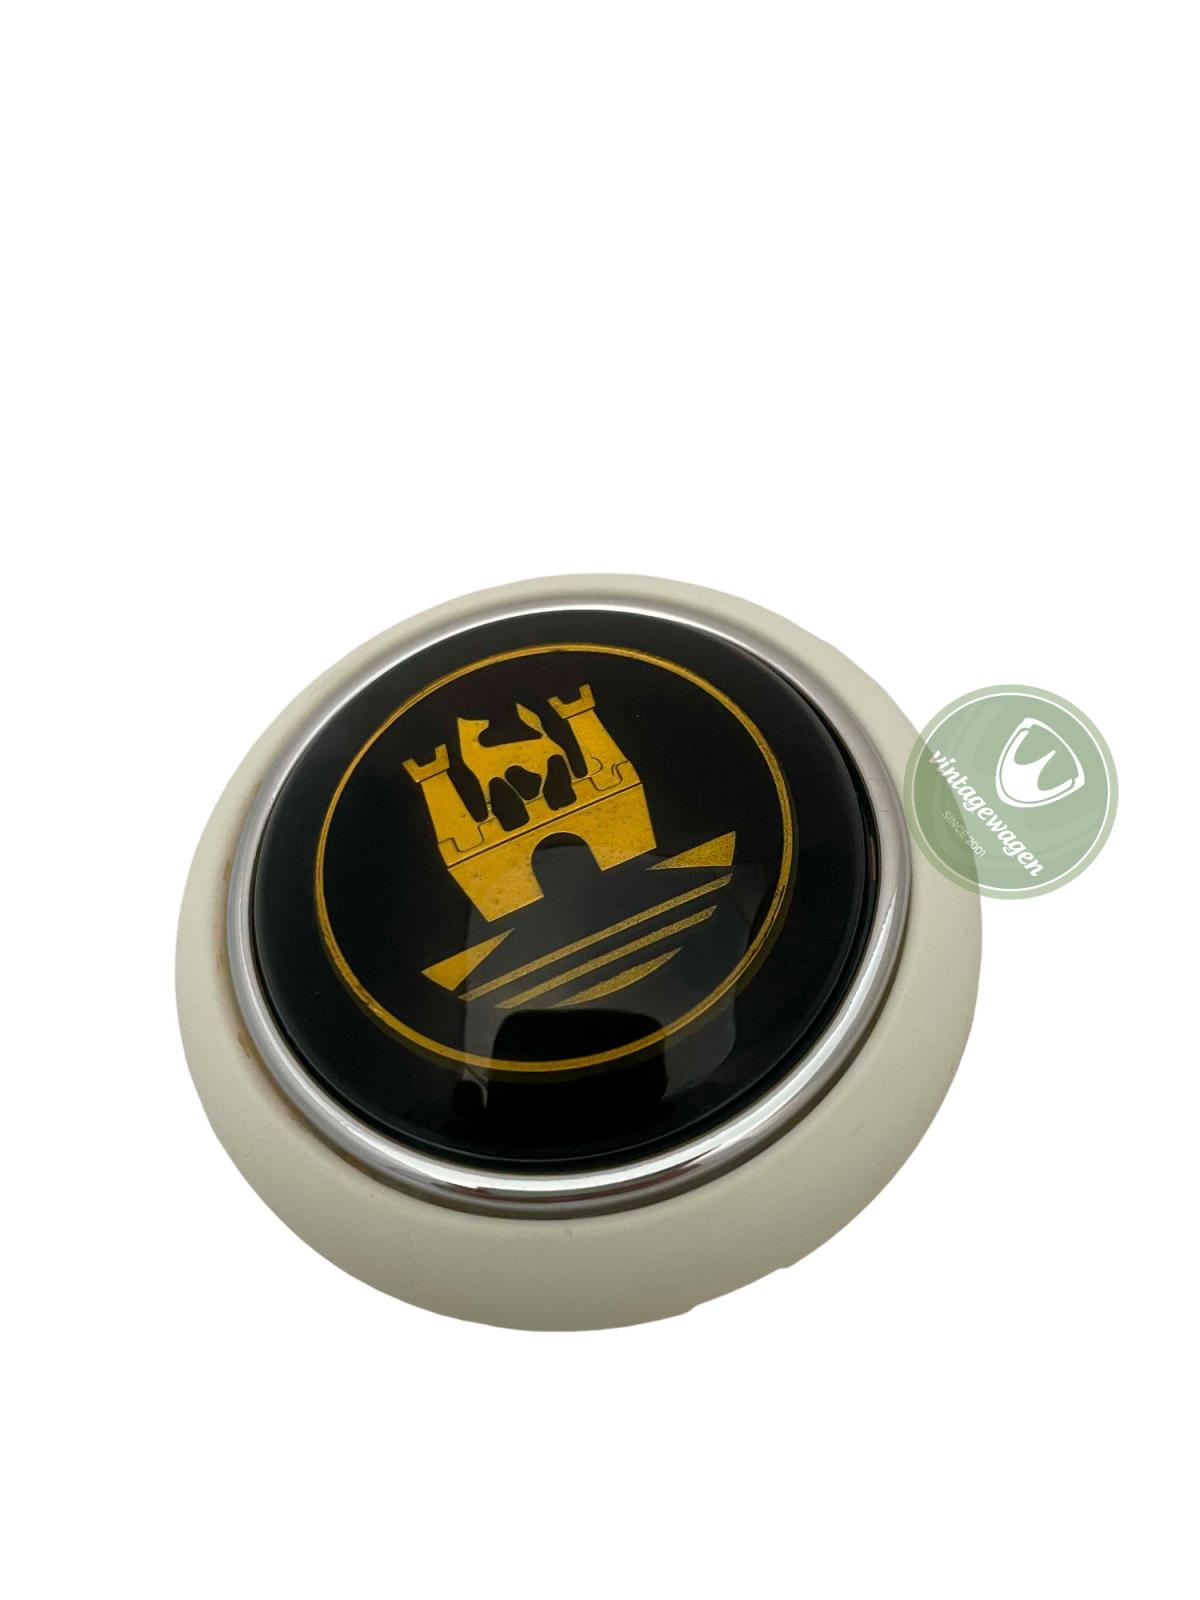 Botão Buzina Kombi, 1955-75, Cinza + Emblema Dourado 211415669gg | Fusca 1955-75 SKU: 211415669GG